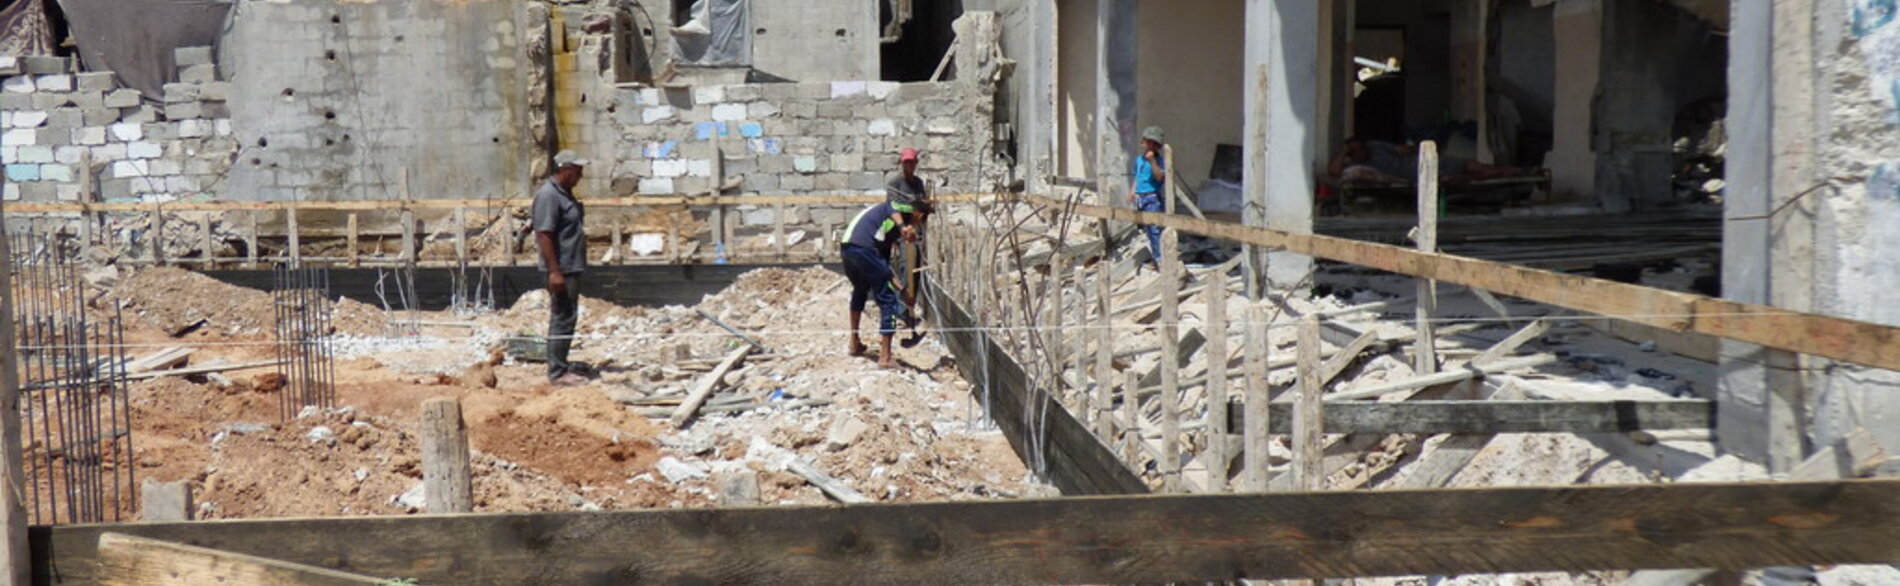 תחילת פעולות השיקום בשכונת א־שג׳עייה ההרוסה בעזה / צילום: משרד האו״ם לתיאום עניינים הומניטריים